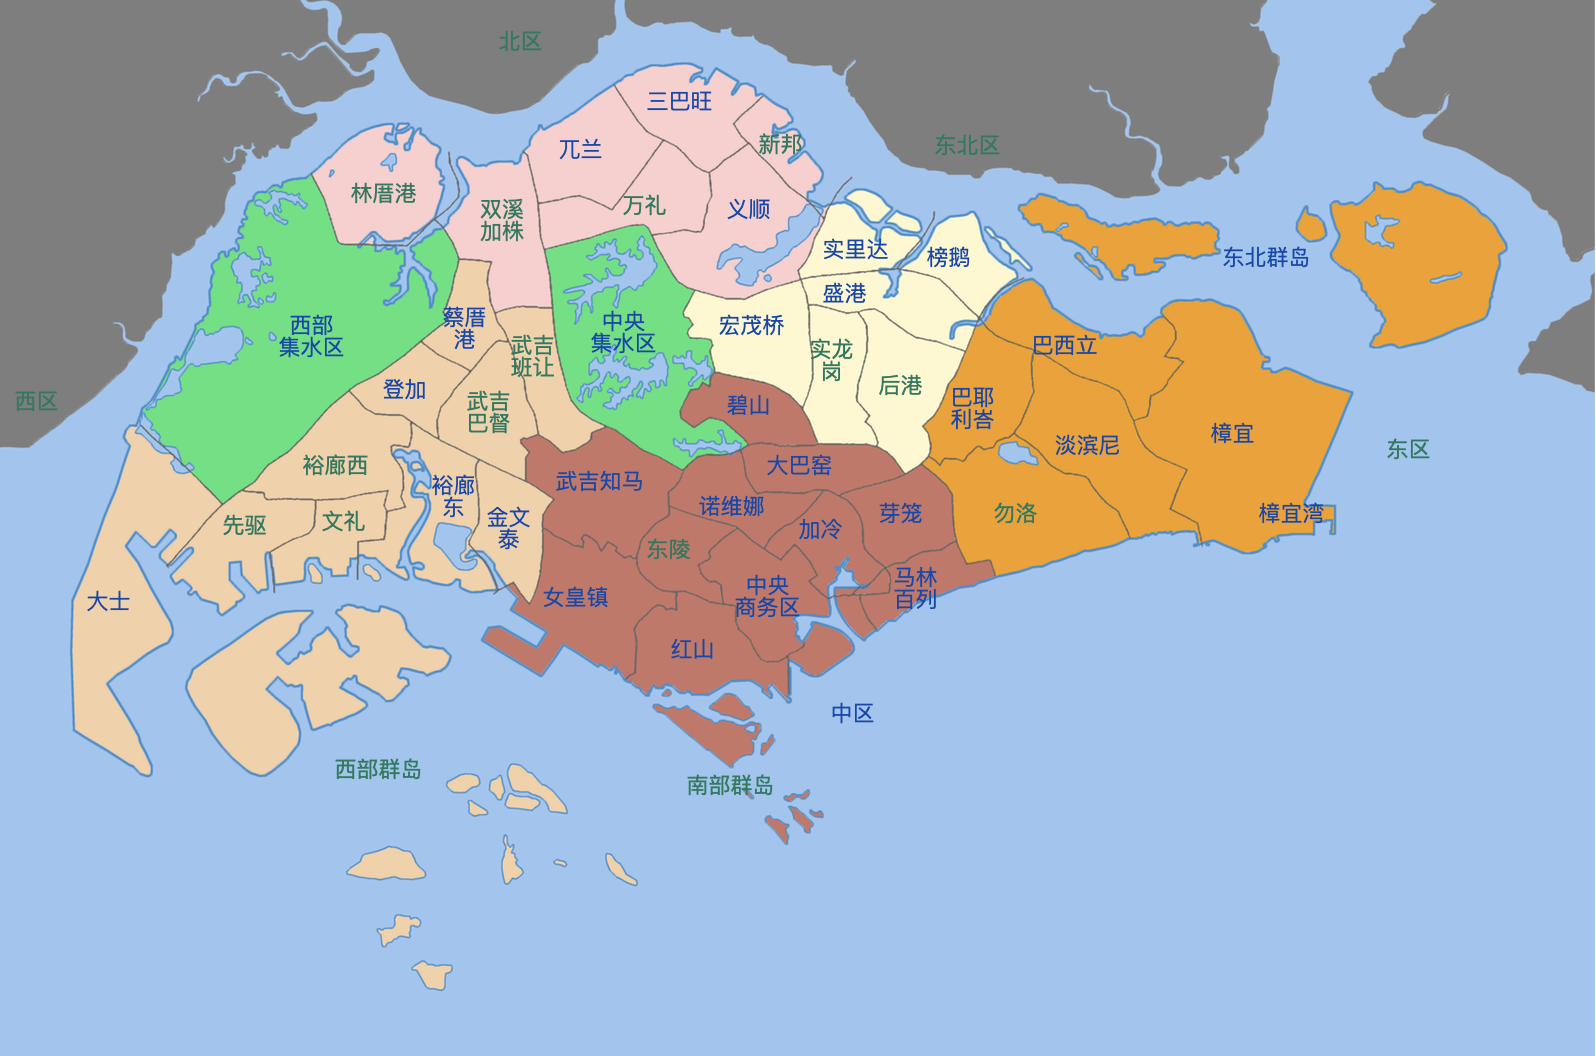 新加坡区域地理图图片